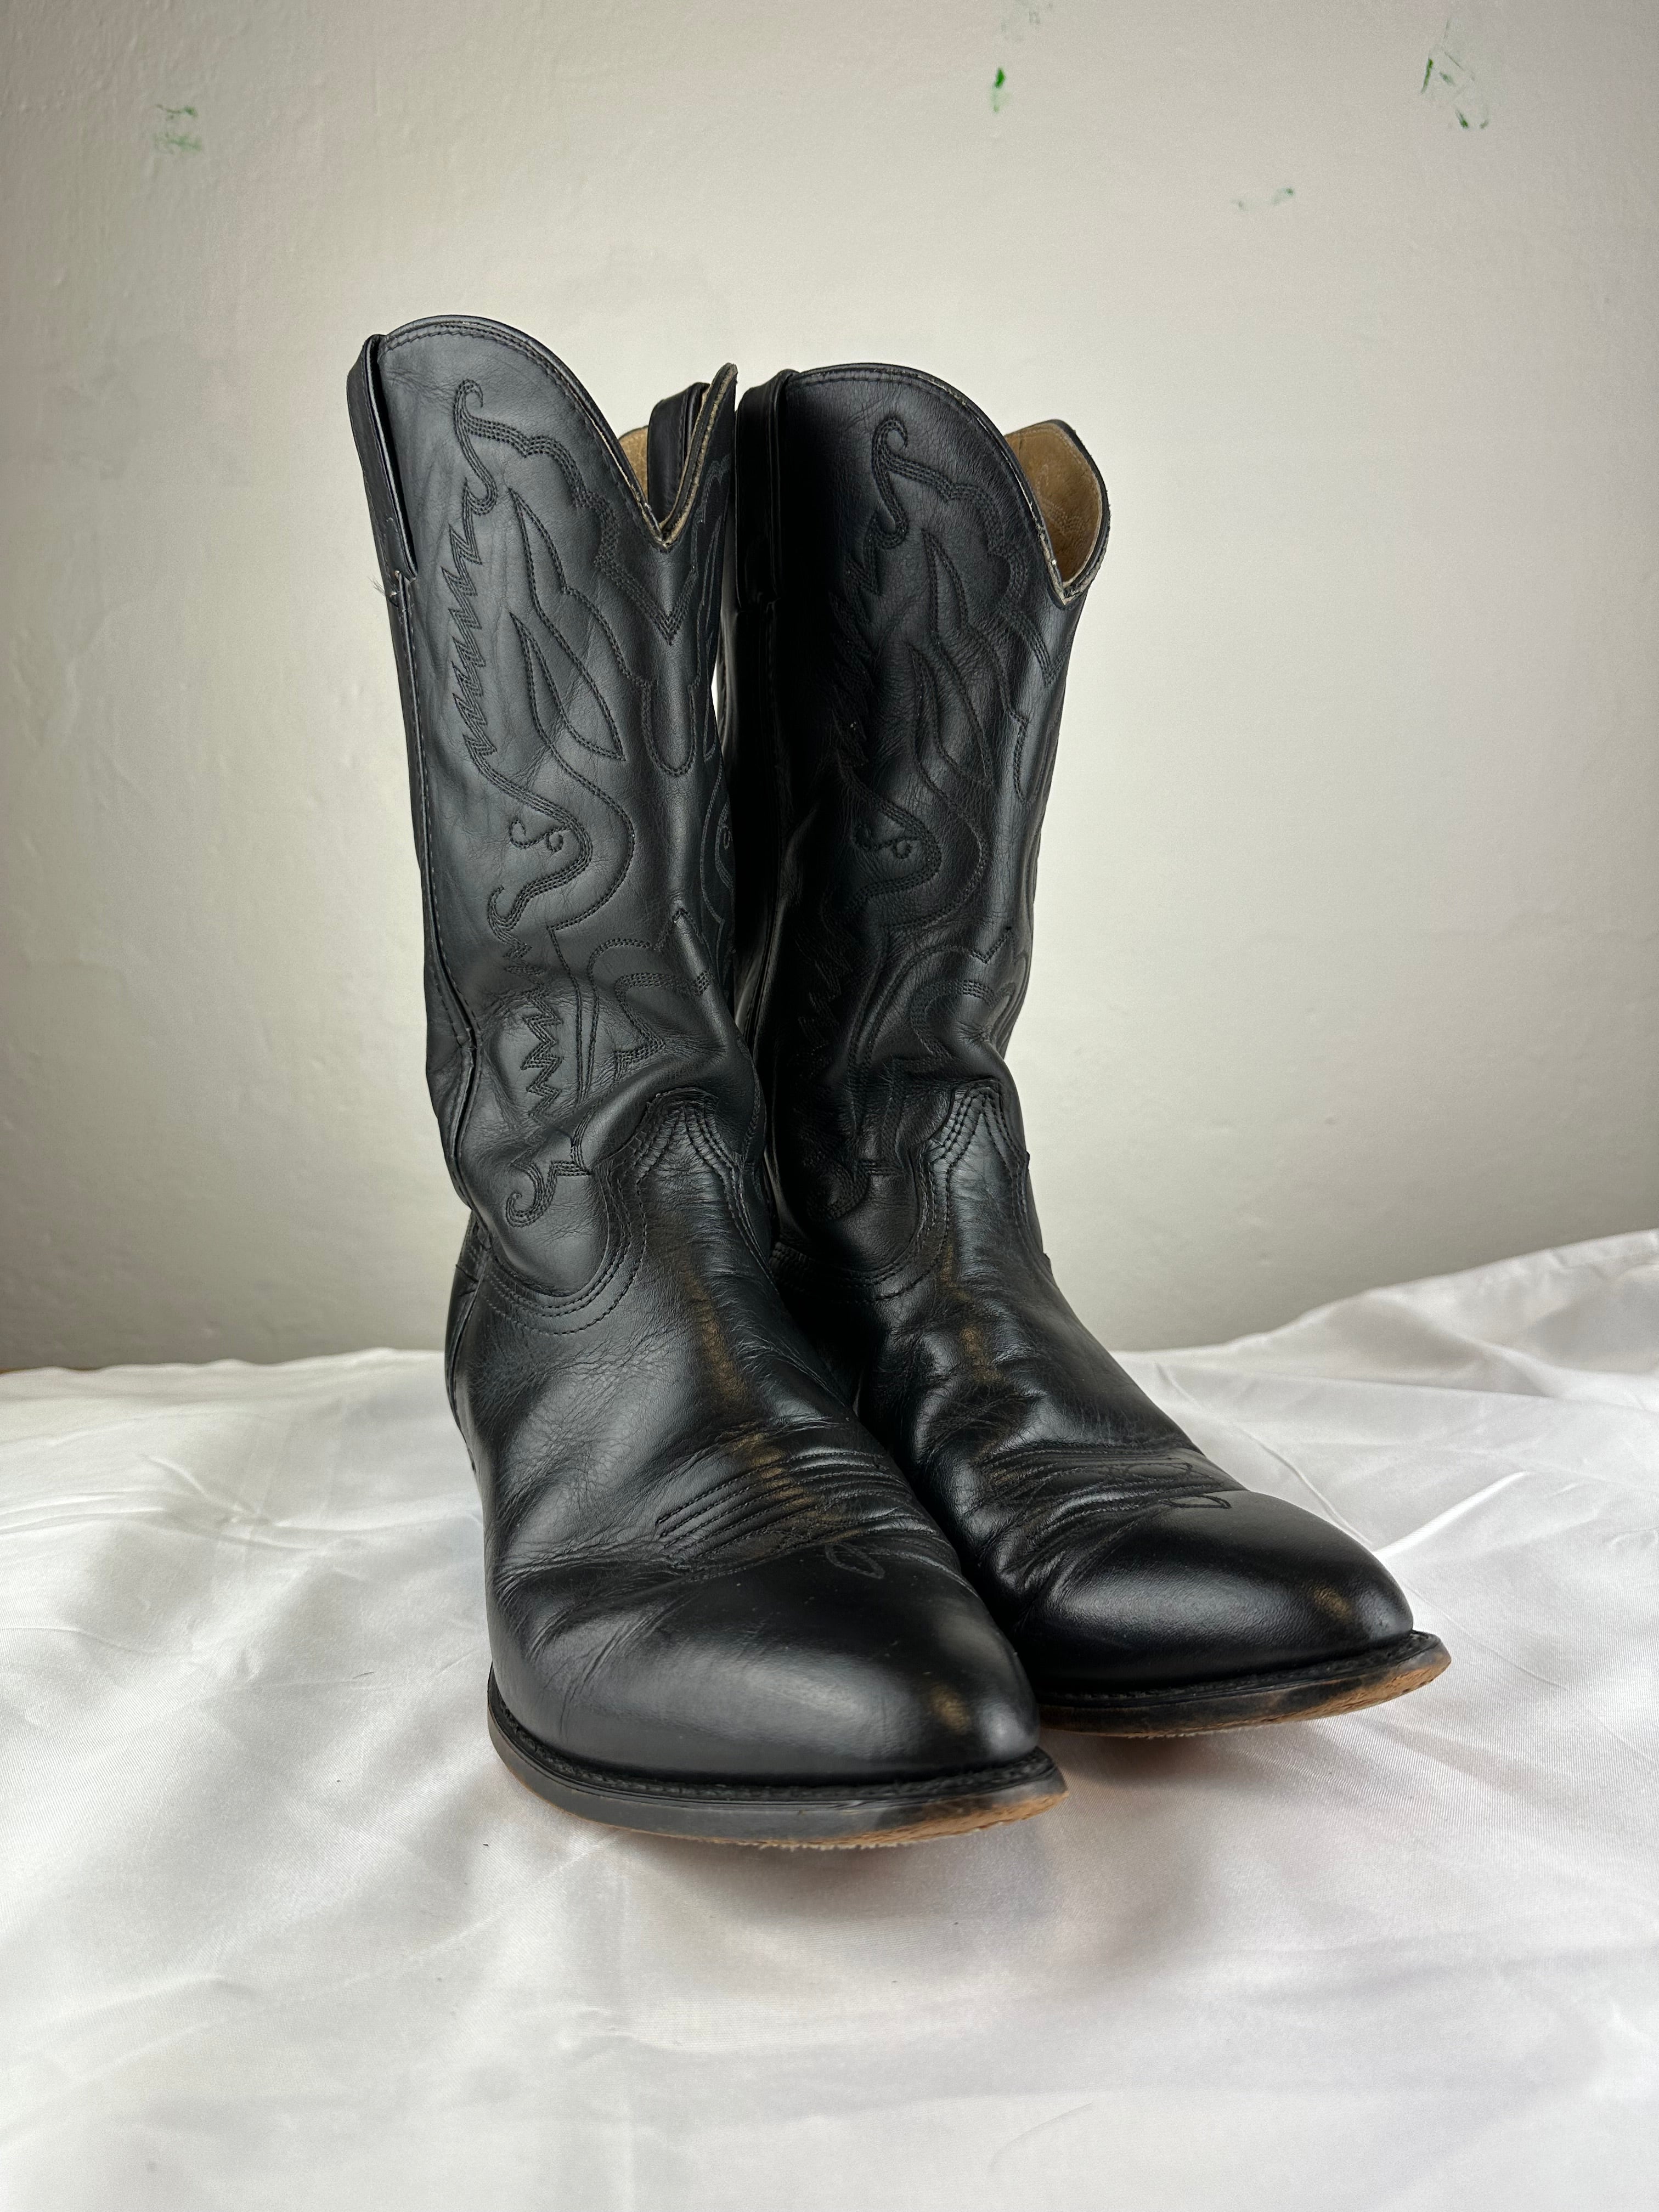 Vintage Cowboy 90s Boots - size 44